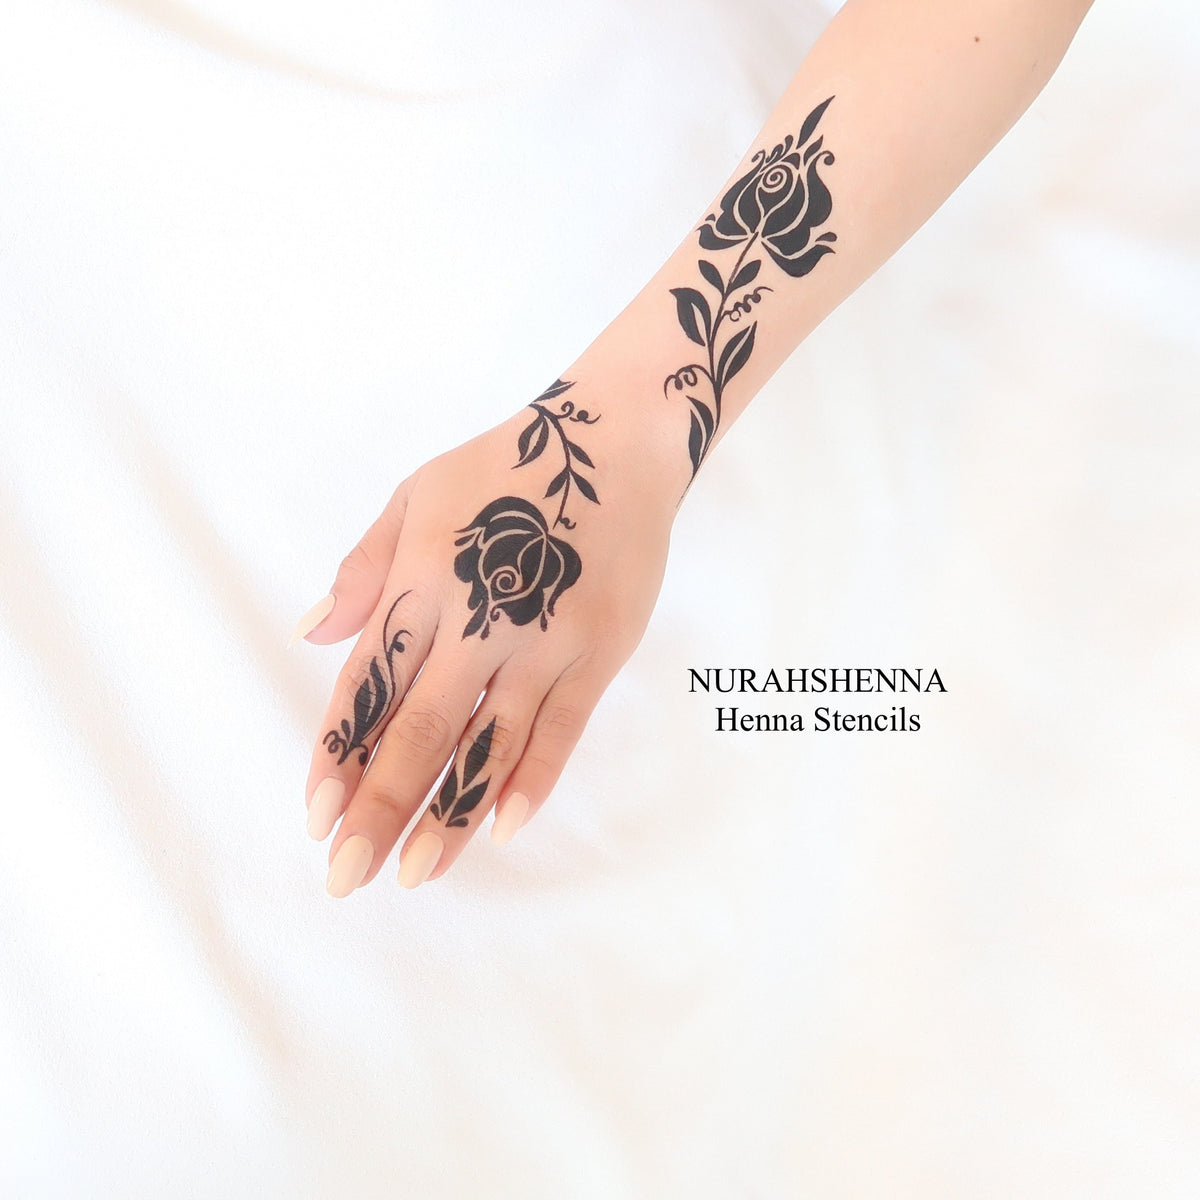 HENNA STENCIL - 040 – NURAHSHENNA